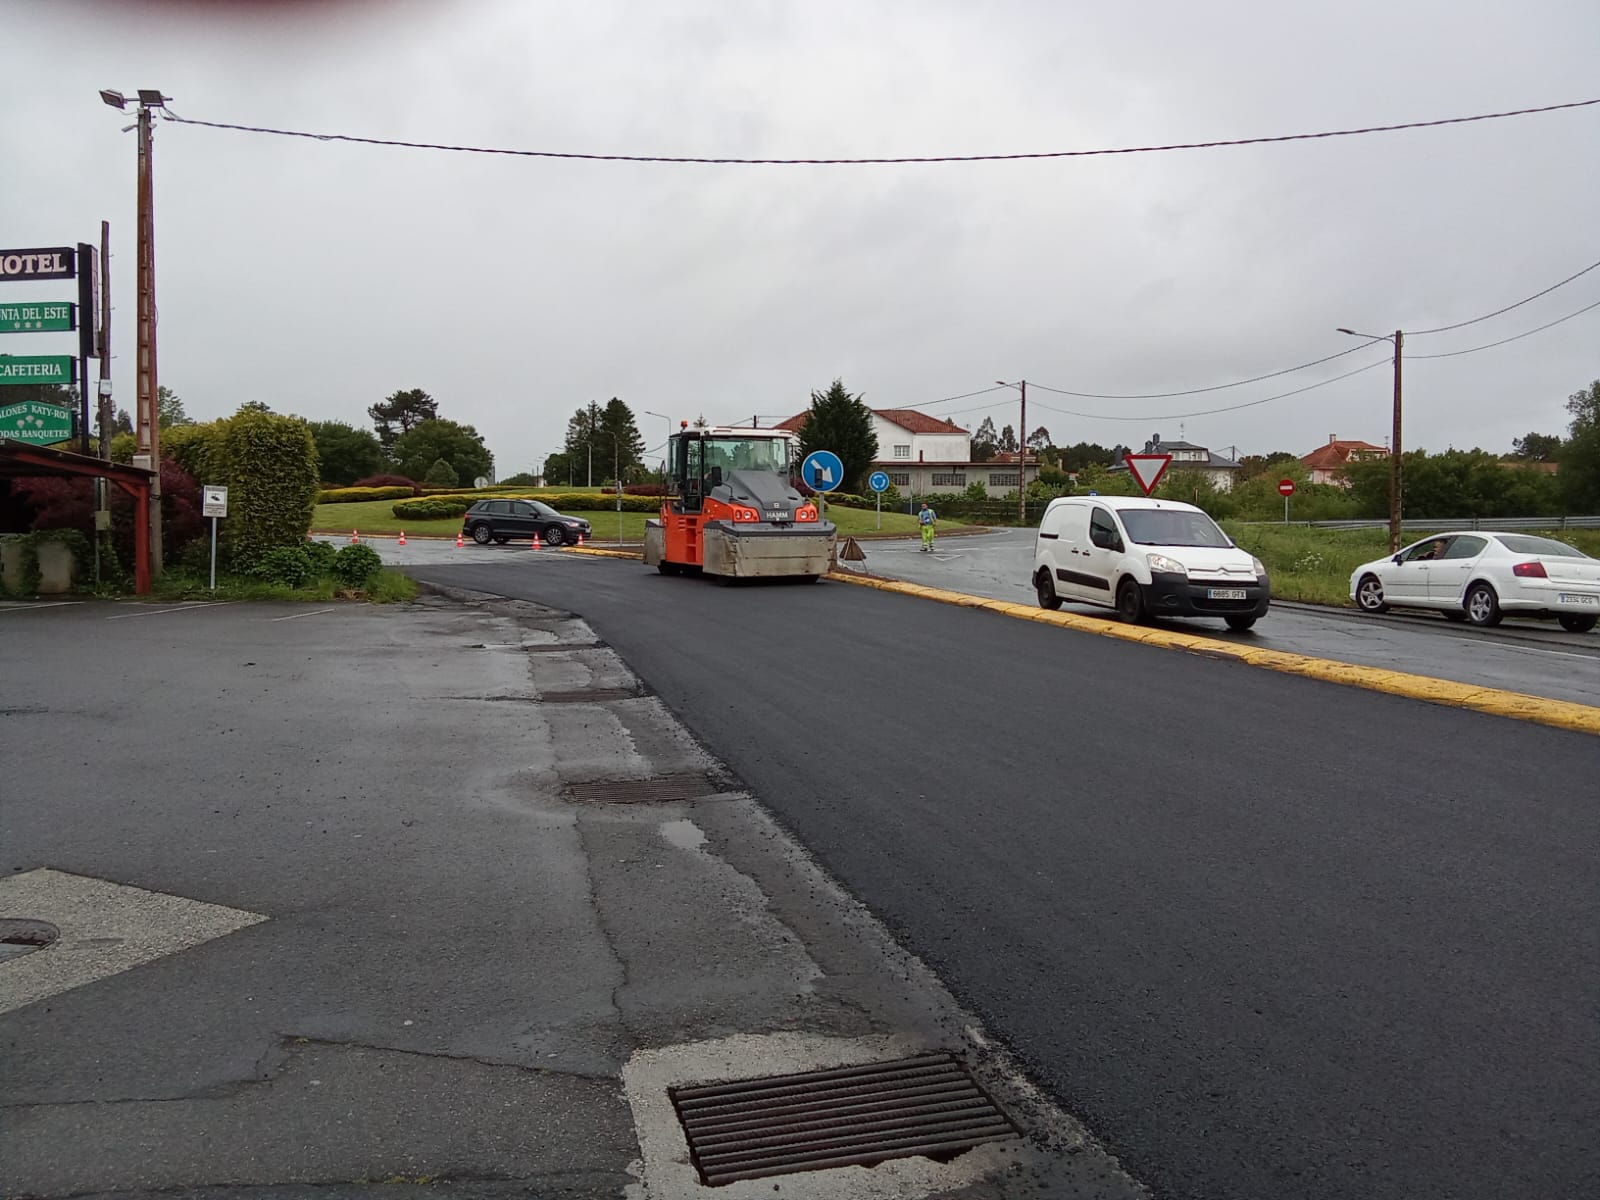 Image 2 of article A Xunta inicia as obras de mellora do firme nas estradas AC-414 e AC-400 no concello de Carballo, que suporán un investimento de 763.000 €